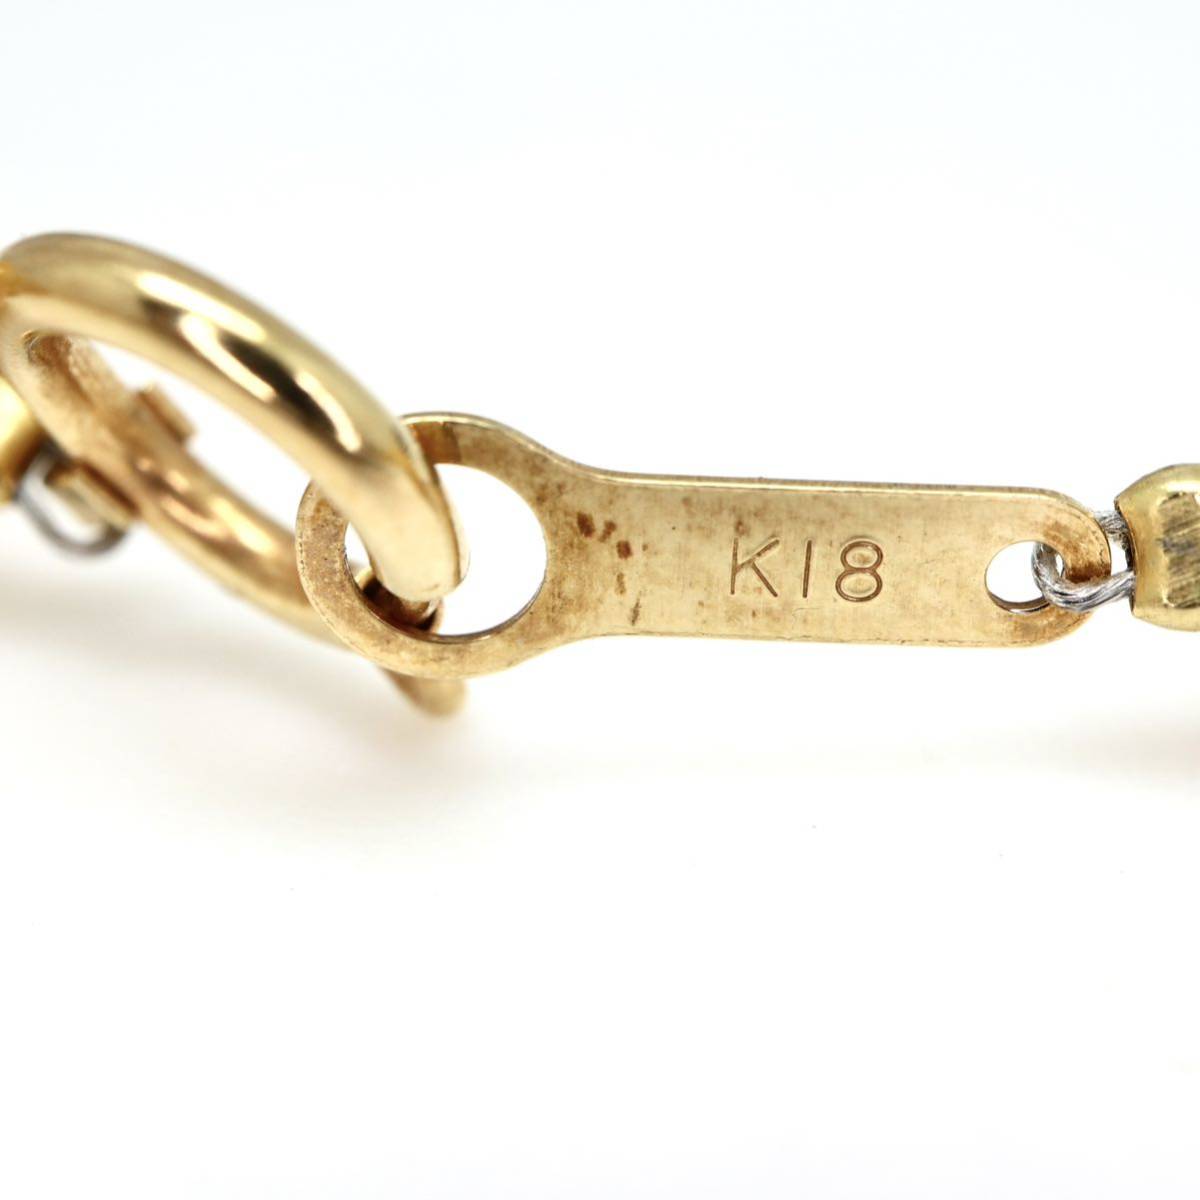 ◆K18 天然ロイヤルアンバーネックレス◆M 40.2g 61.0cm amber 本琥珀 こはく コハク necklace ジュエリー jewelry EB1_画像4